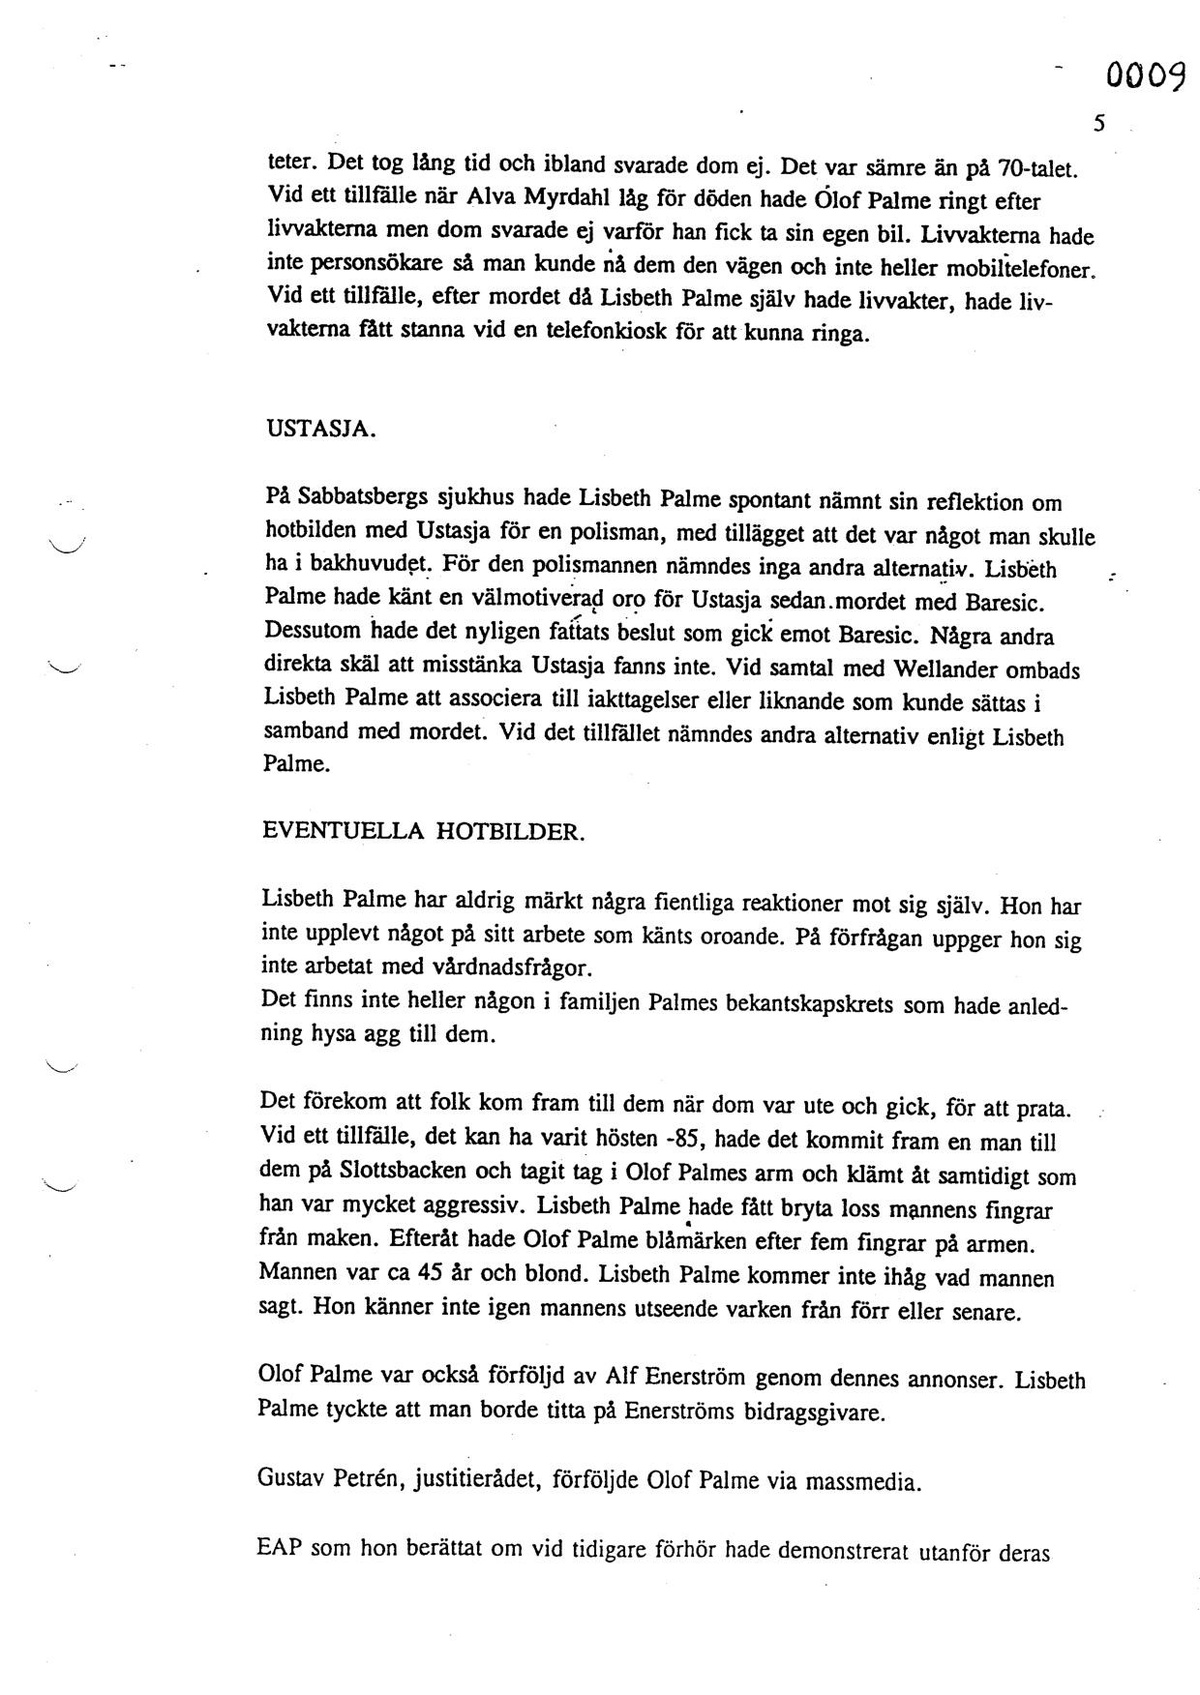 Pol-1993-11-03 1615 T116-00-L Lisbeth Palme om biobesök och överfallet.pdf